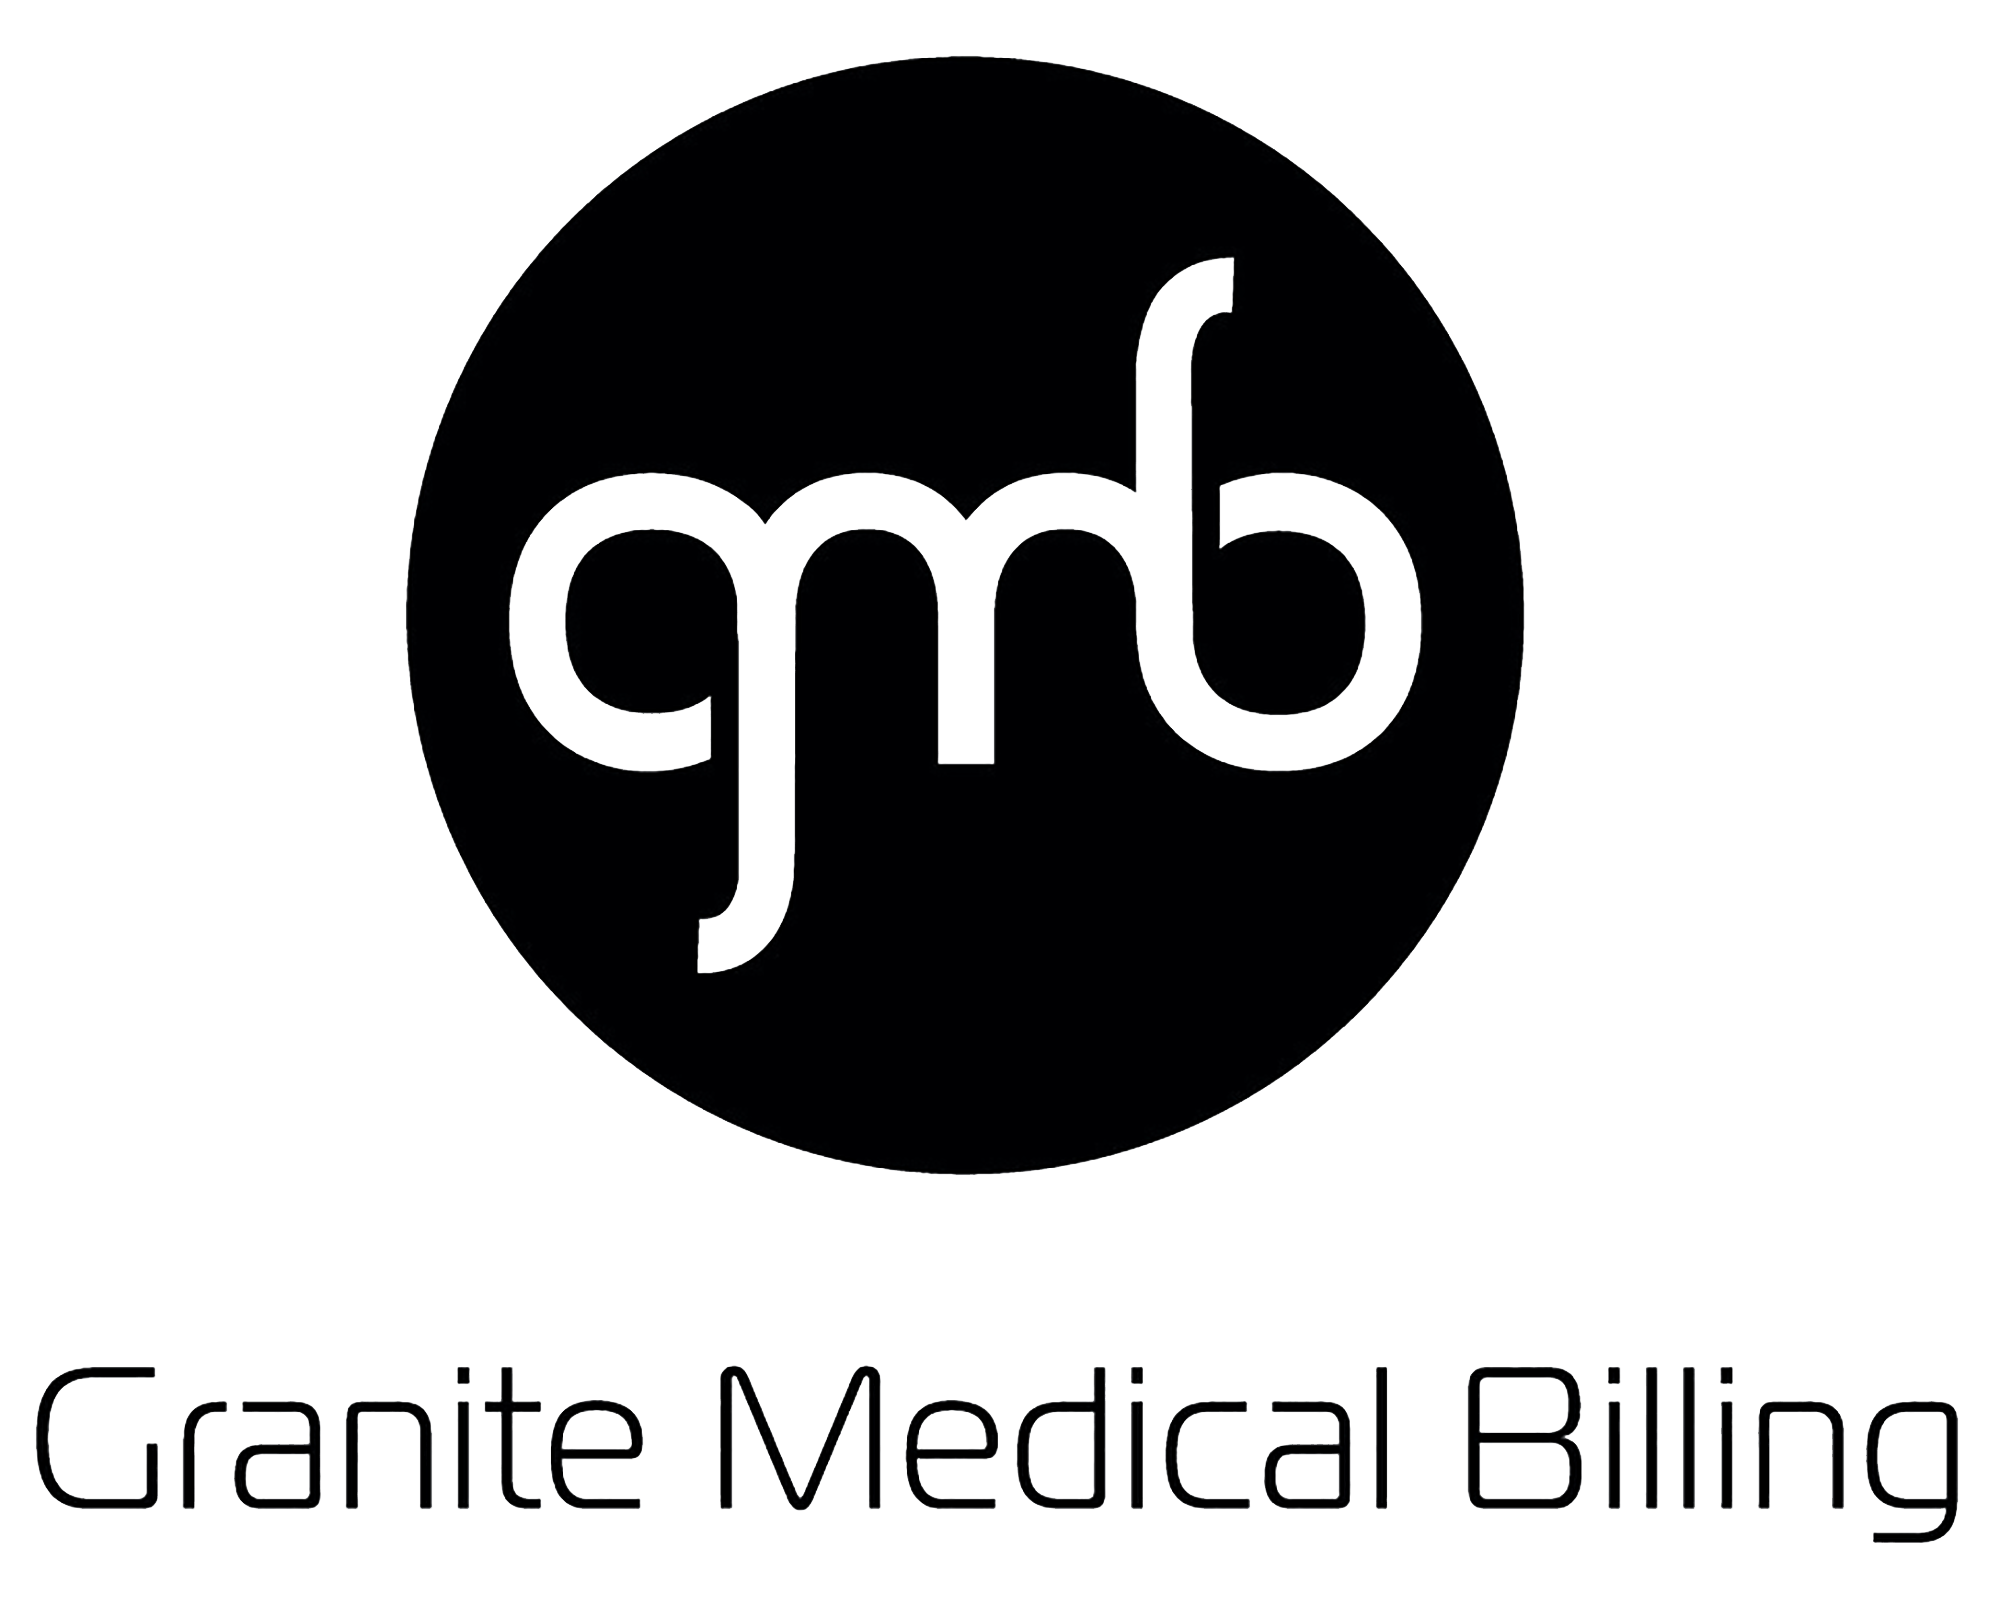 Granite Medical Billing